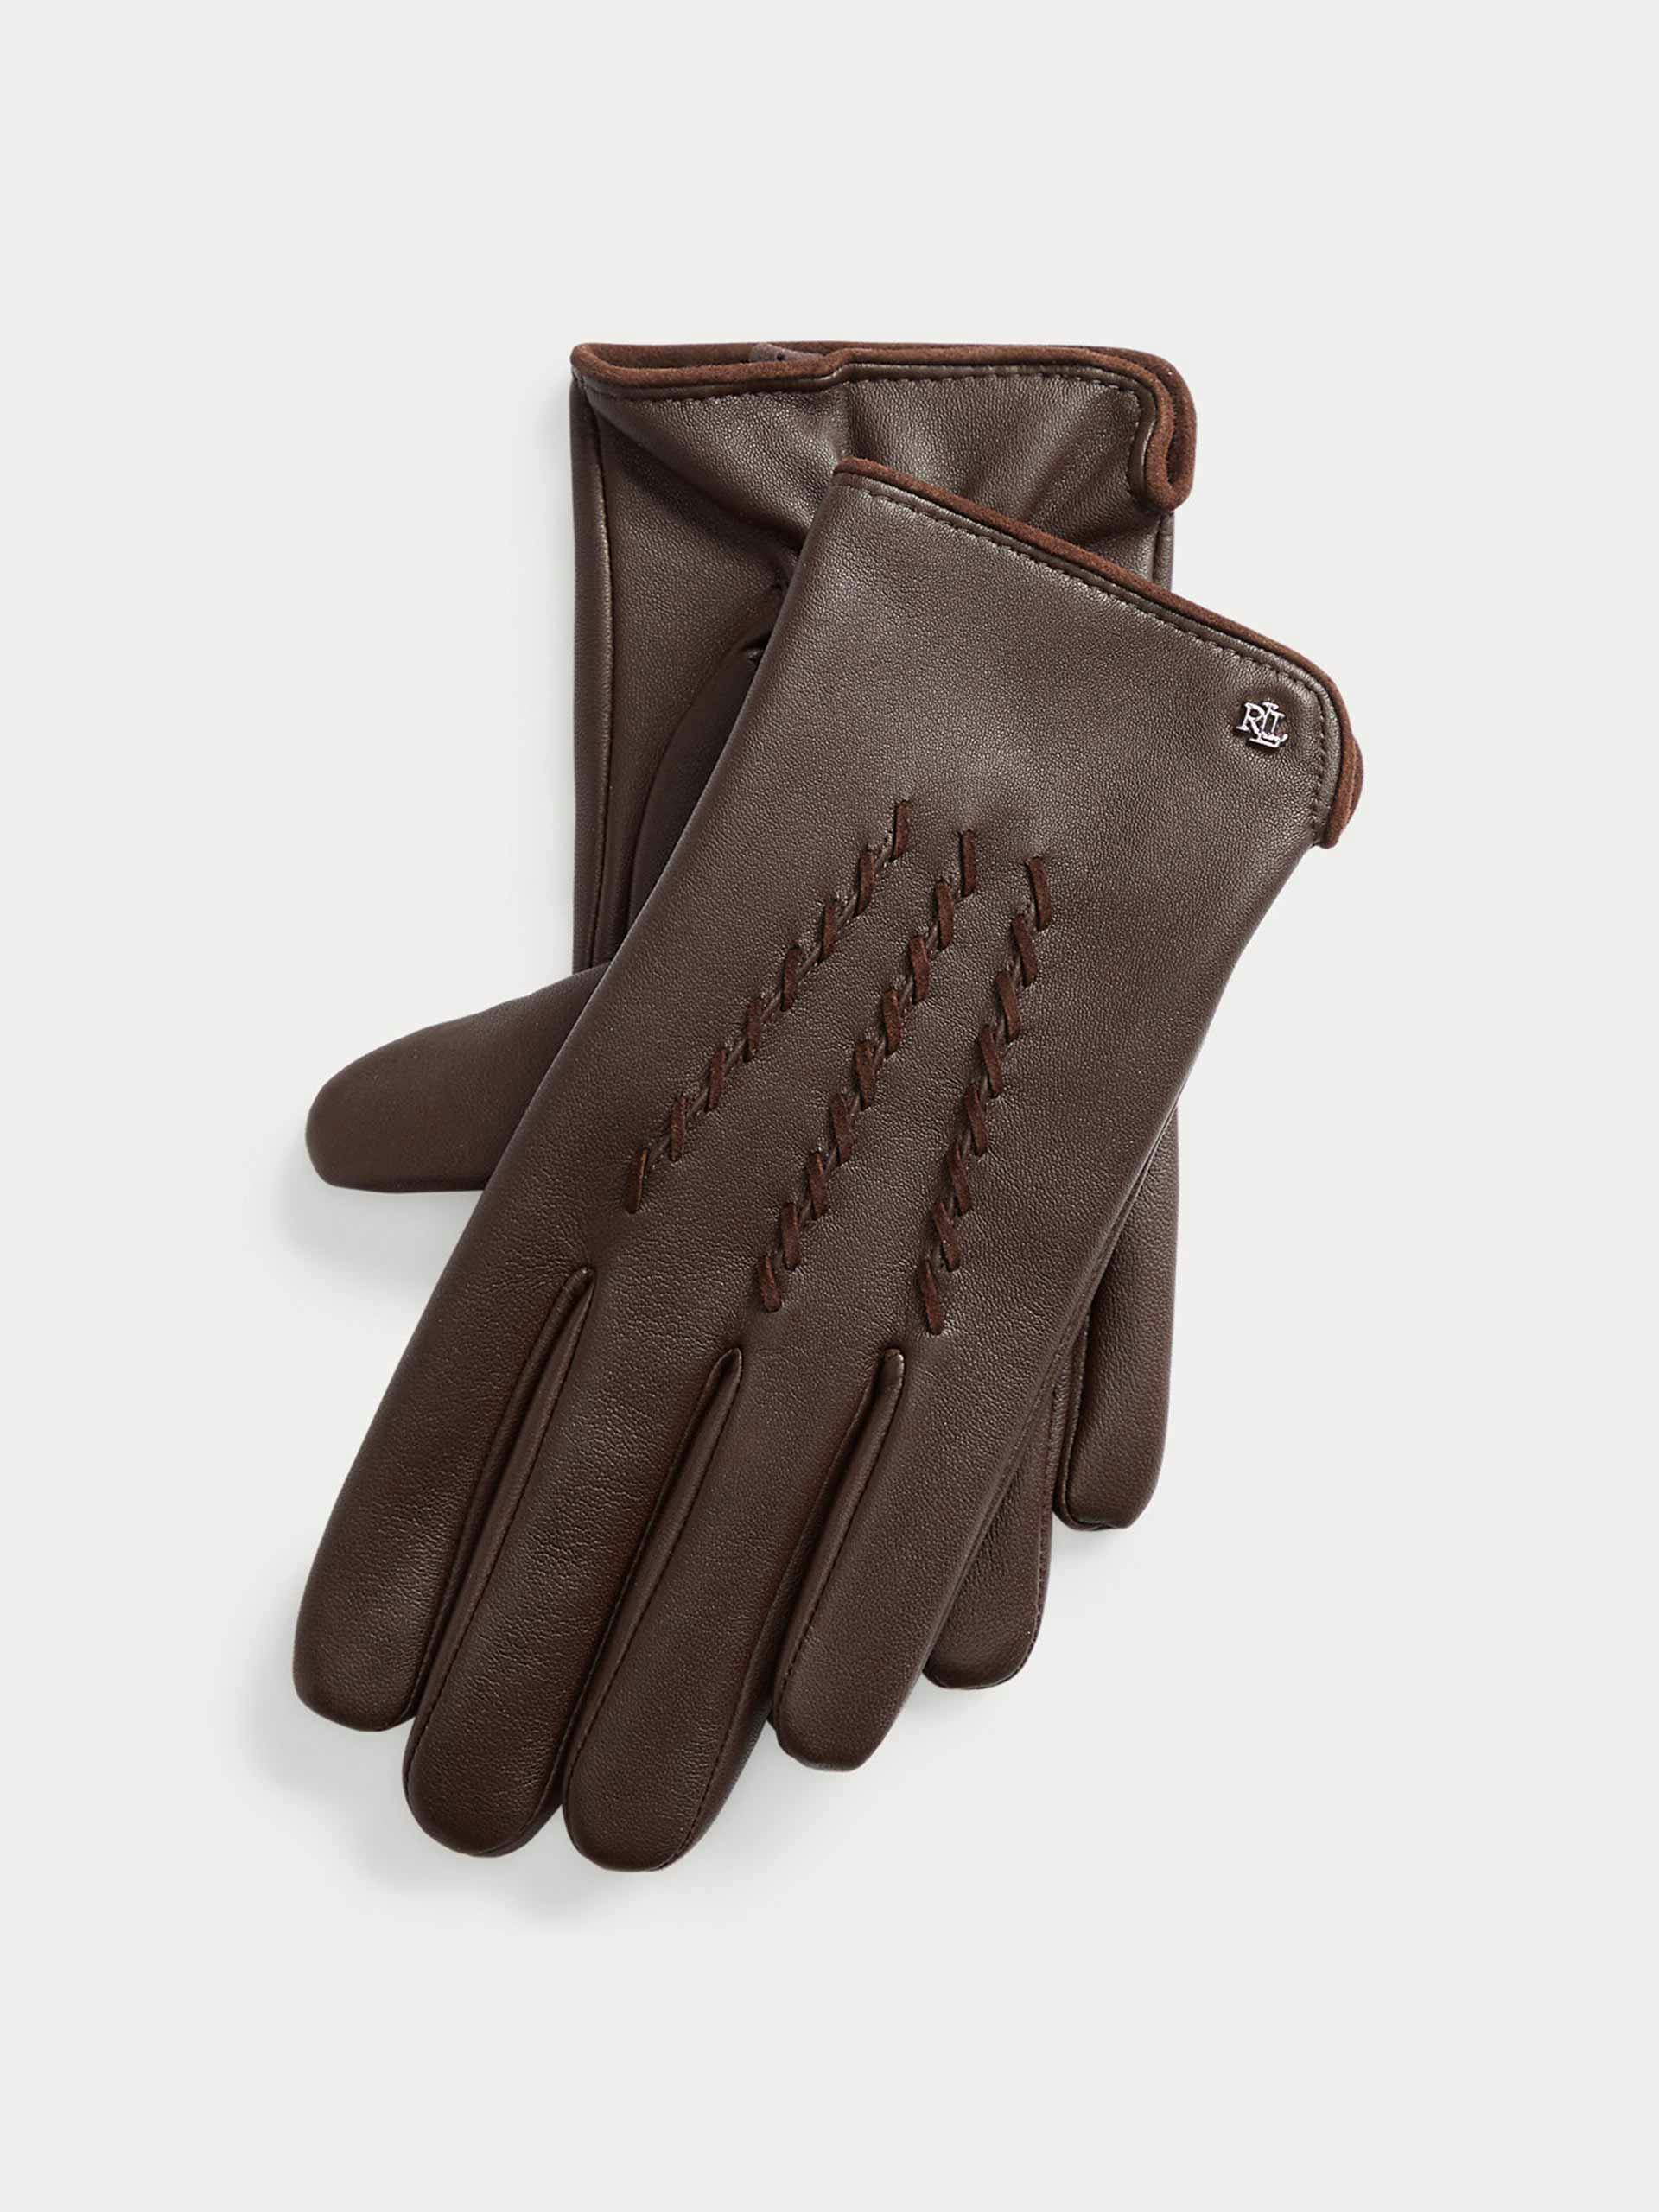 Brown sheepskin gloves